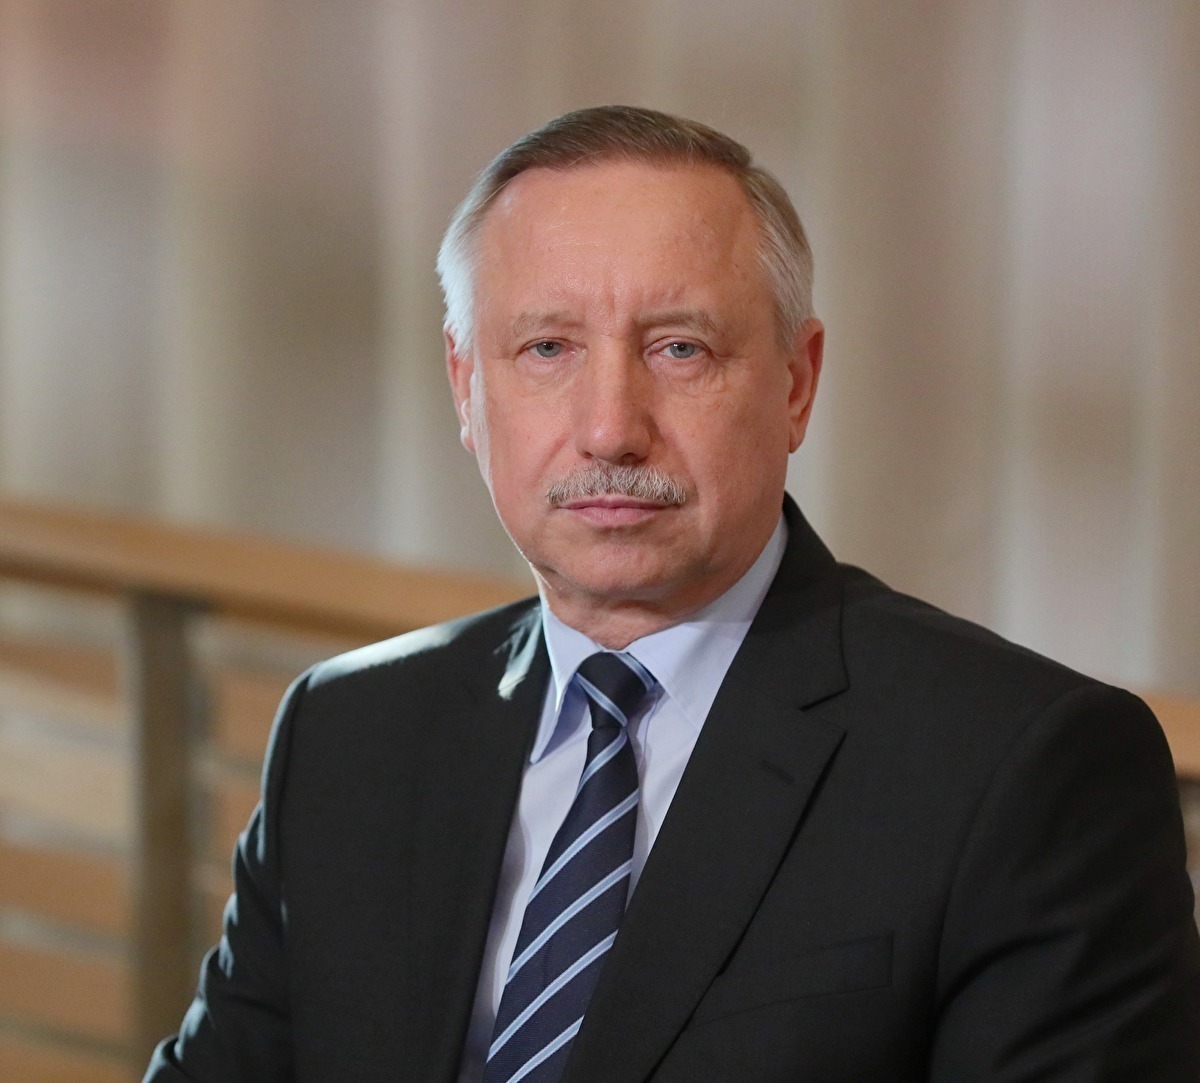 Шнуров вновь посвятил стих Беглову: «Выдающийся оратор петербургский губернатор»